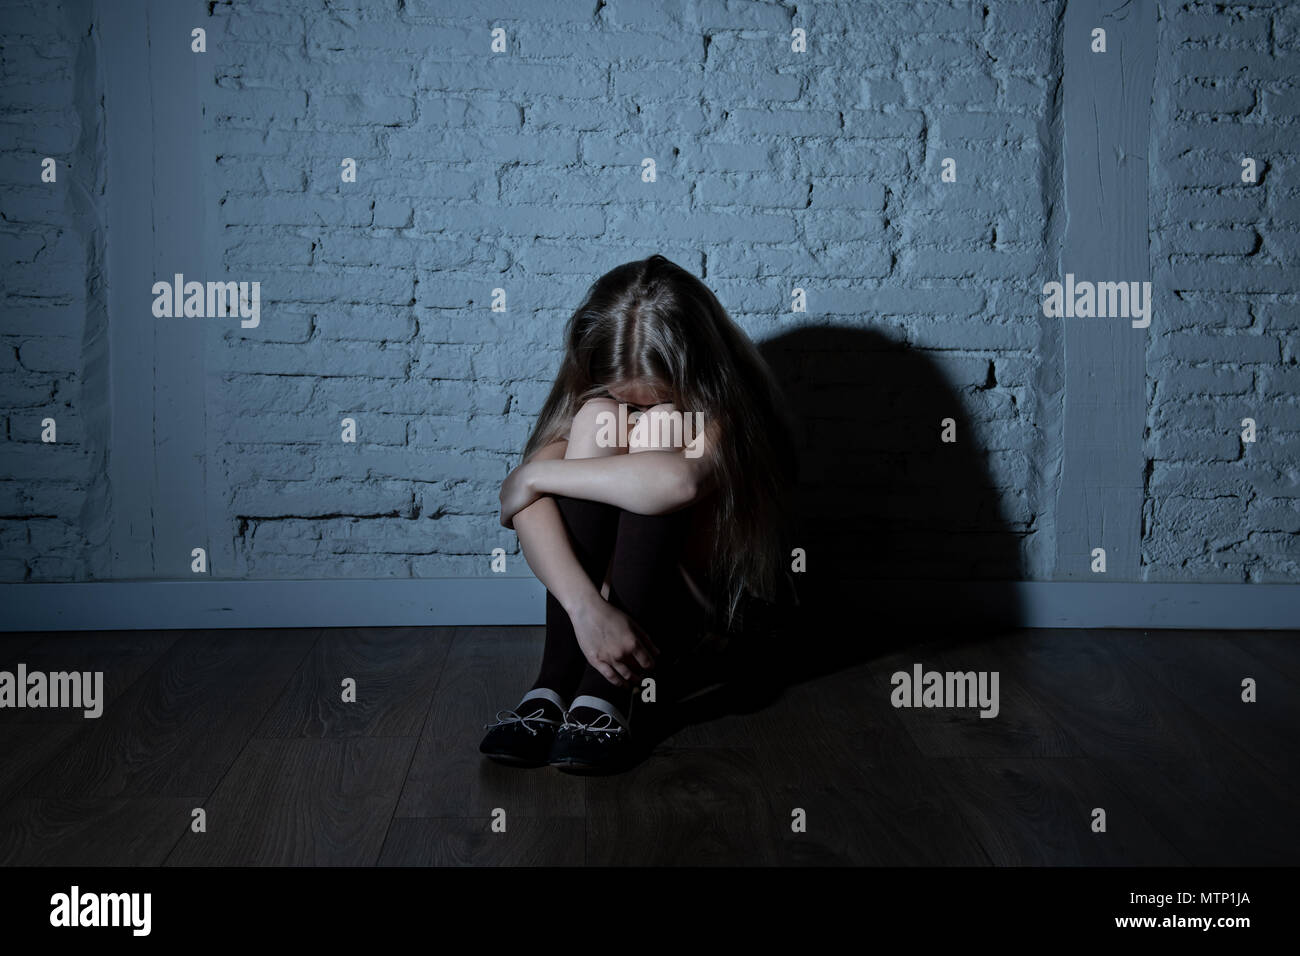 Désespérément triste jeune fille souffrant de bulling et abattage harcèlement seul, malheureux et sans espoir désespéré assis contre le mur, Lumière sombre. Sc Banque D'Images